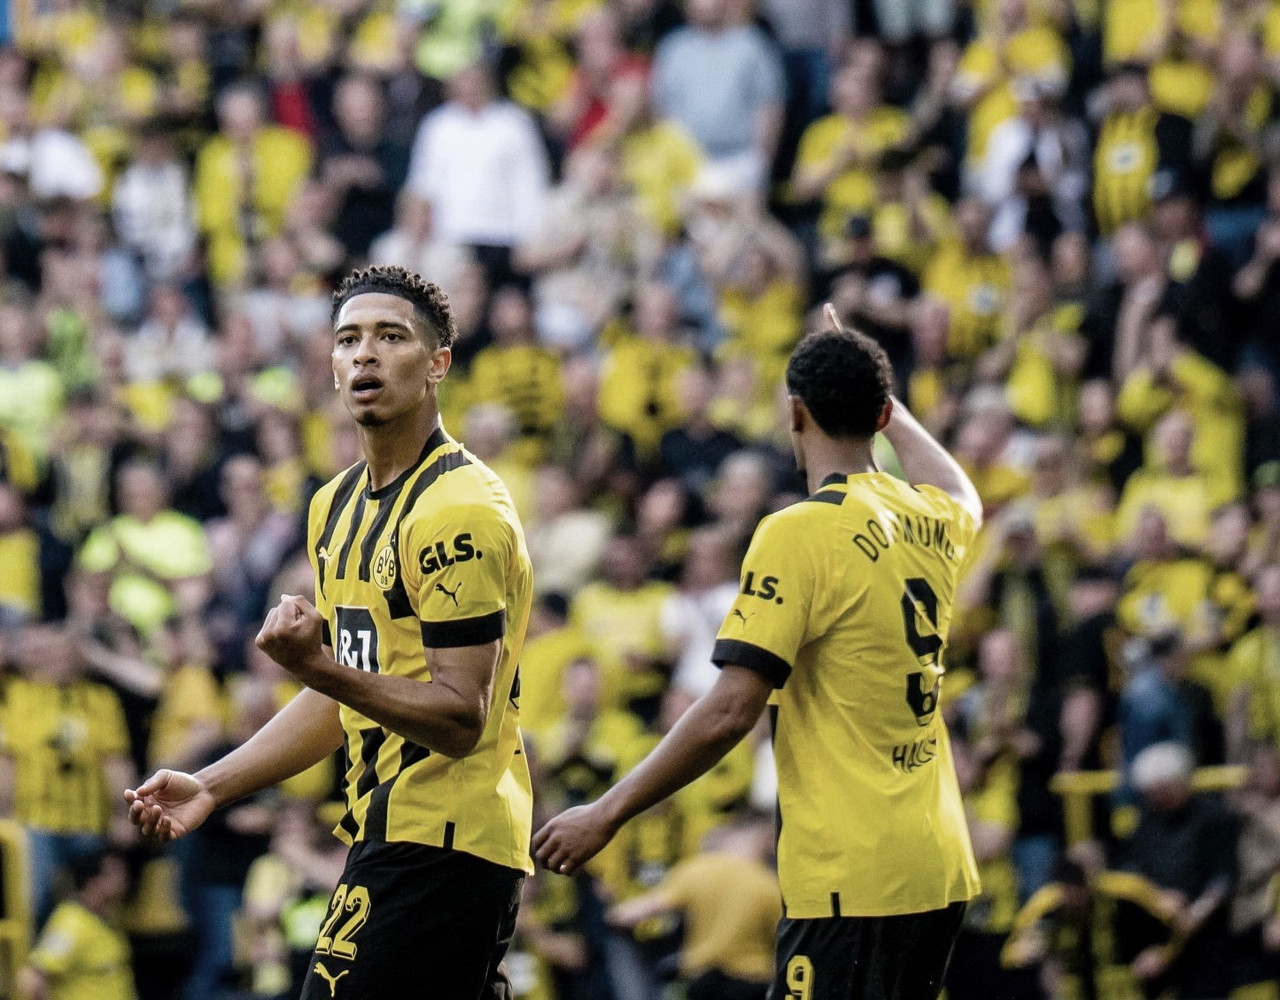 El Dortmund quiere la corona